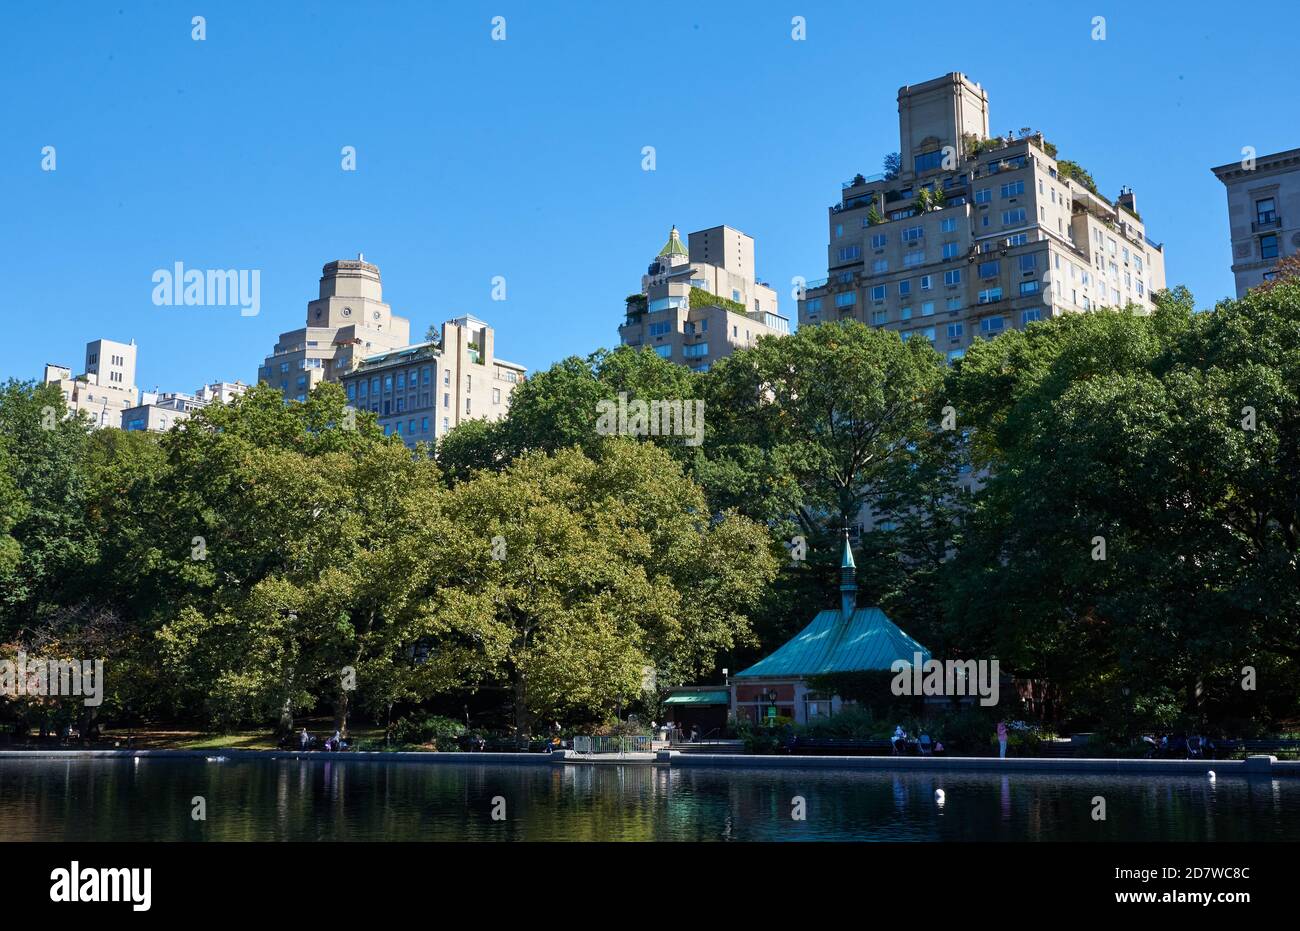 Conservatory Water ist ein Modellboot Teich im Central Park in Manhattan, New York City. Hinter den Bäumen sind Wohngebäude auf der Fifth Avenue Stockfoto